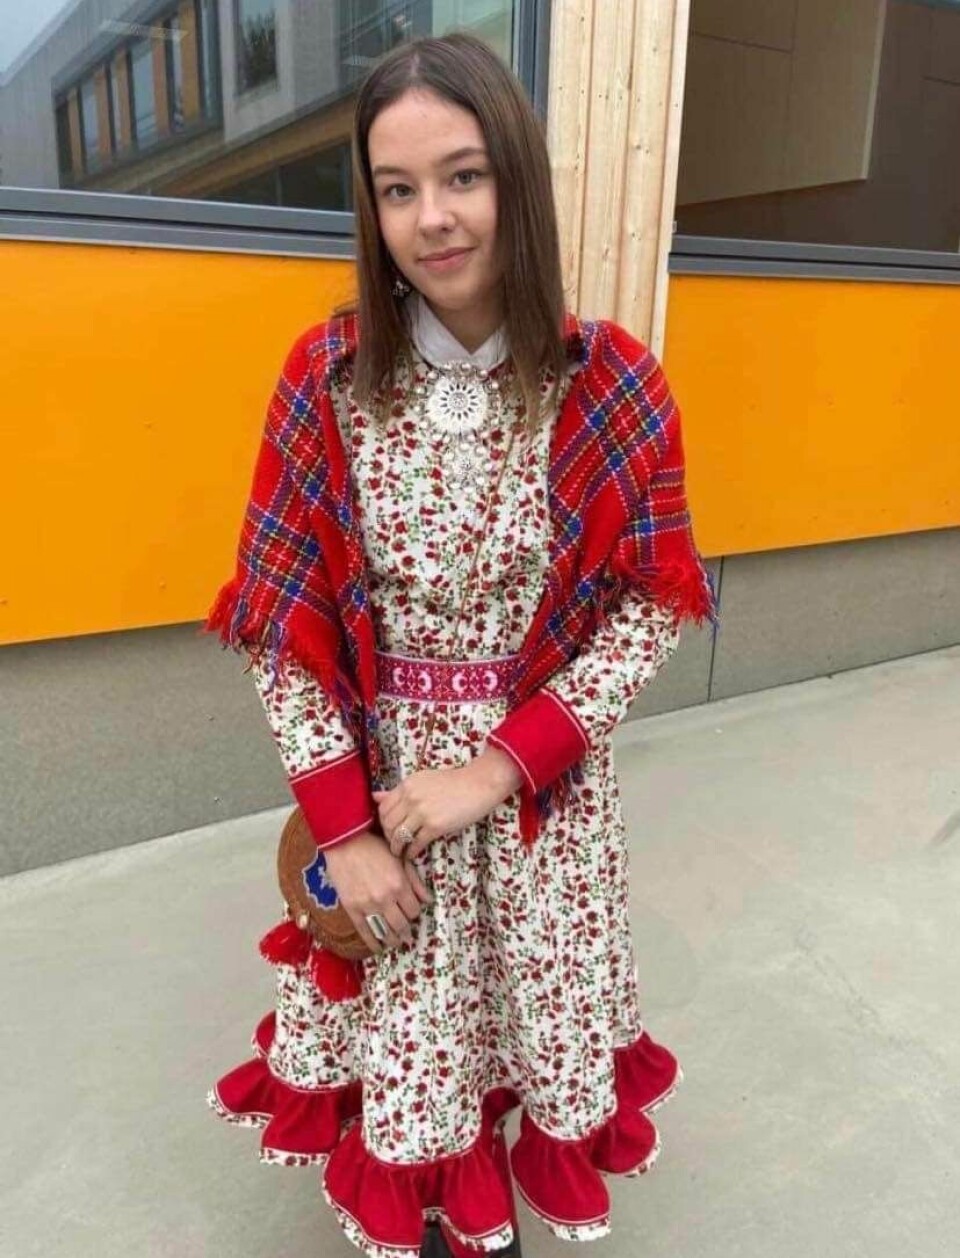 STOLT: Eila Marie Engkvist Muotka har samisk som morsmål, og kjenner godt til det samiske samfunnet.